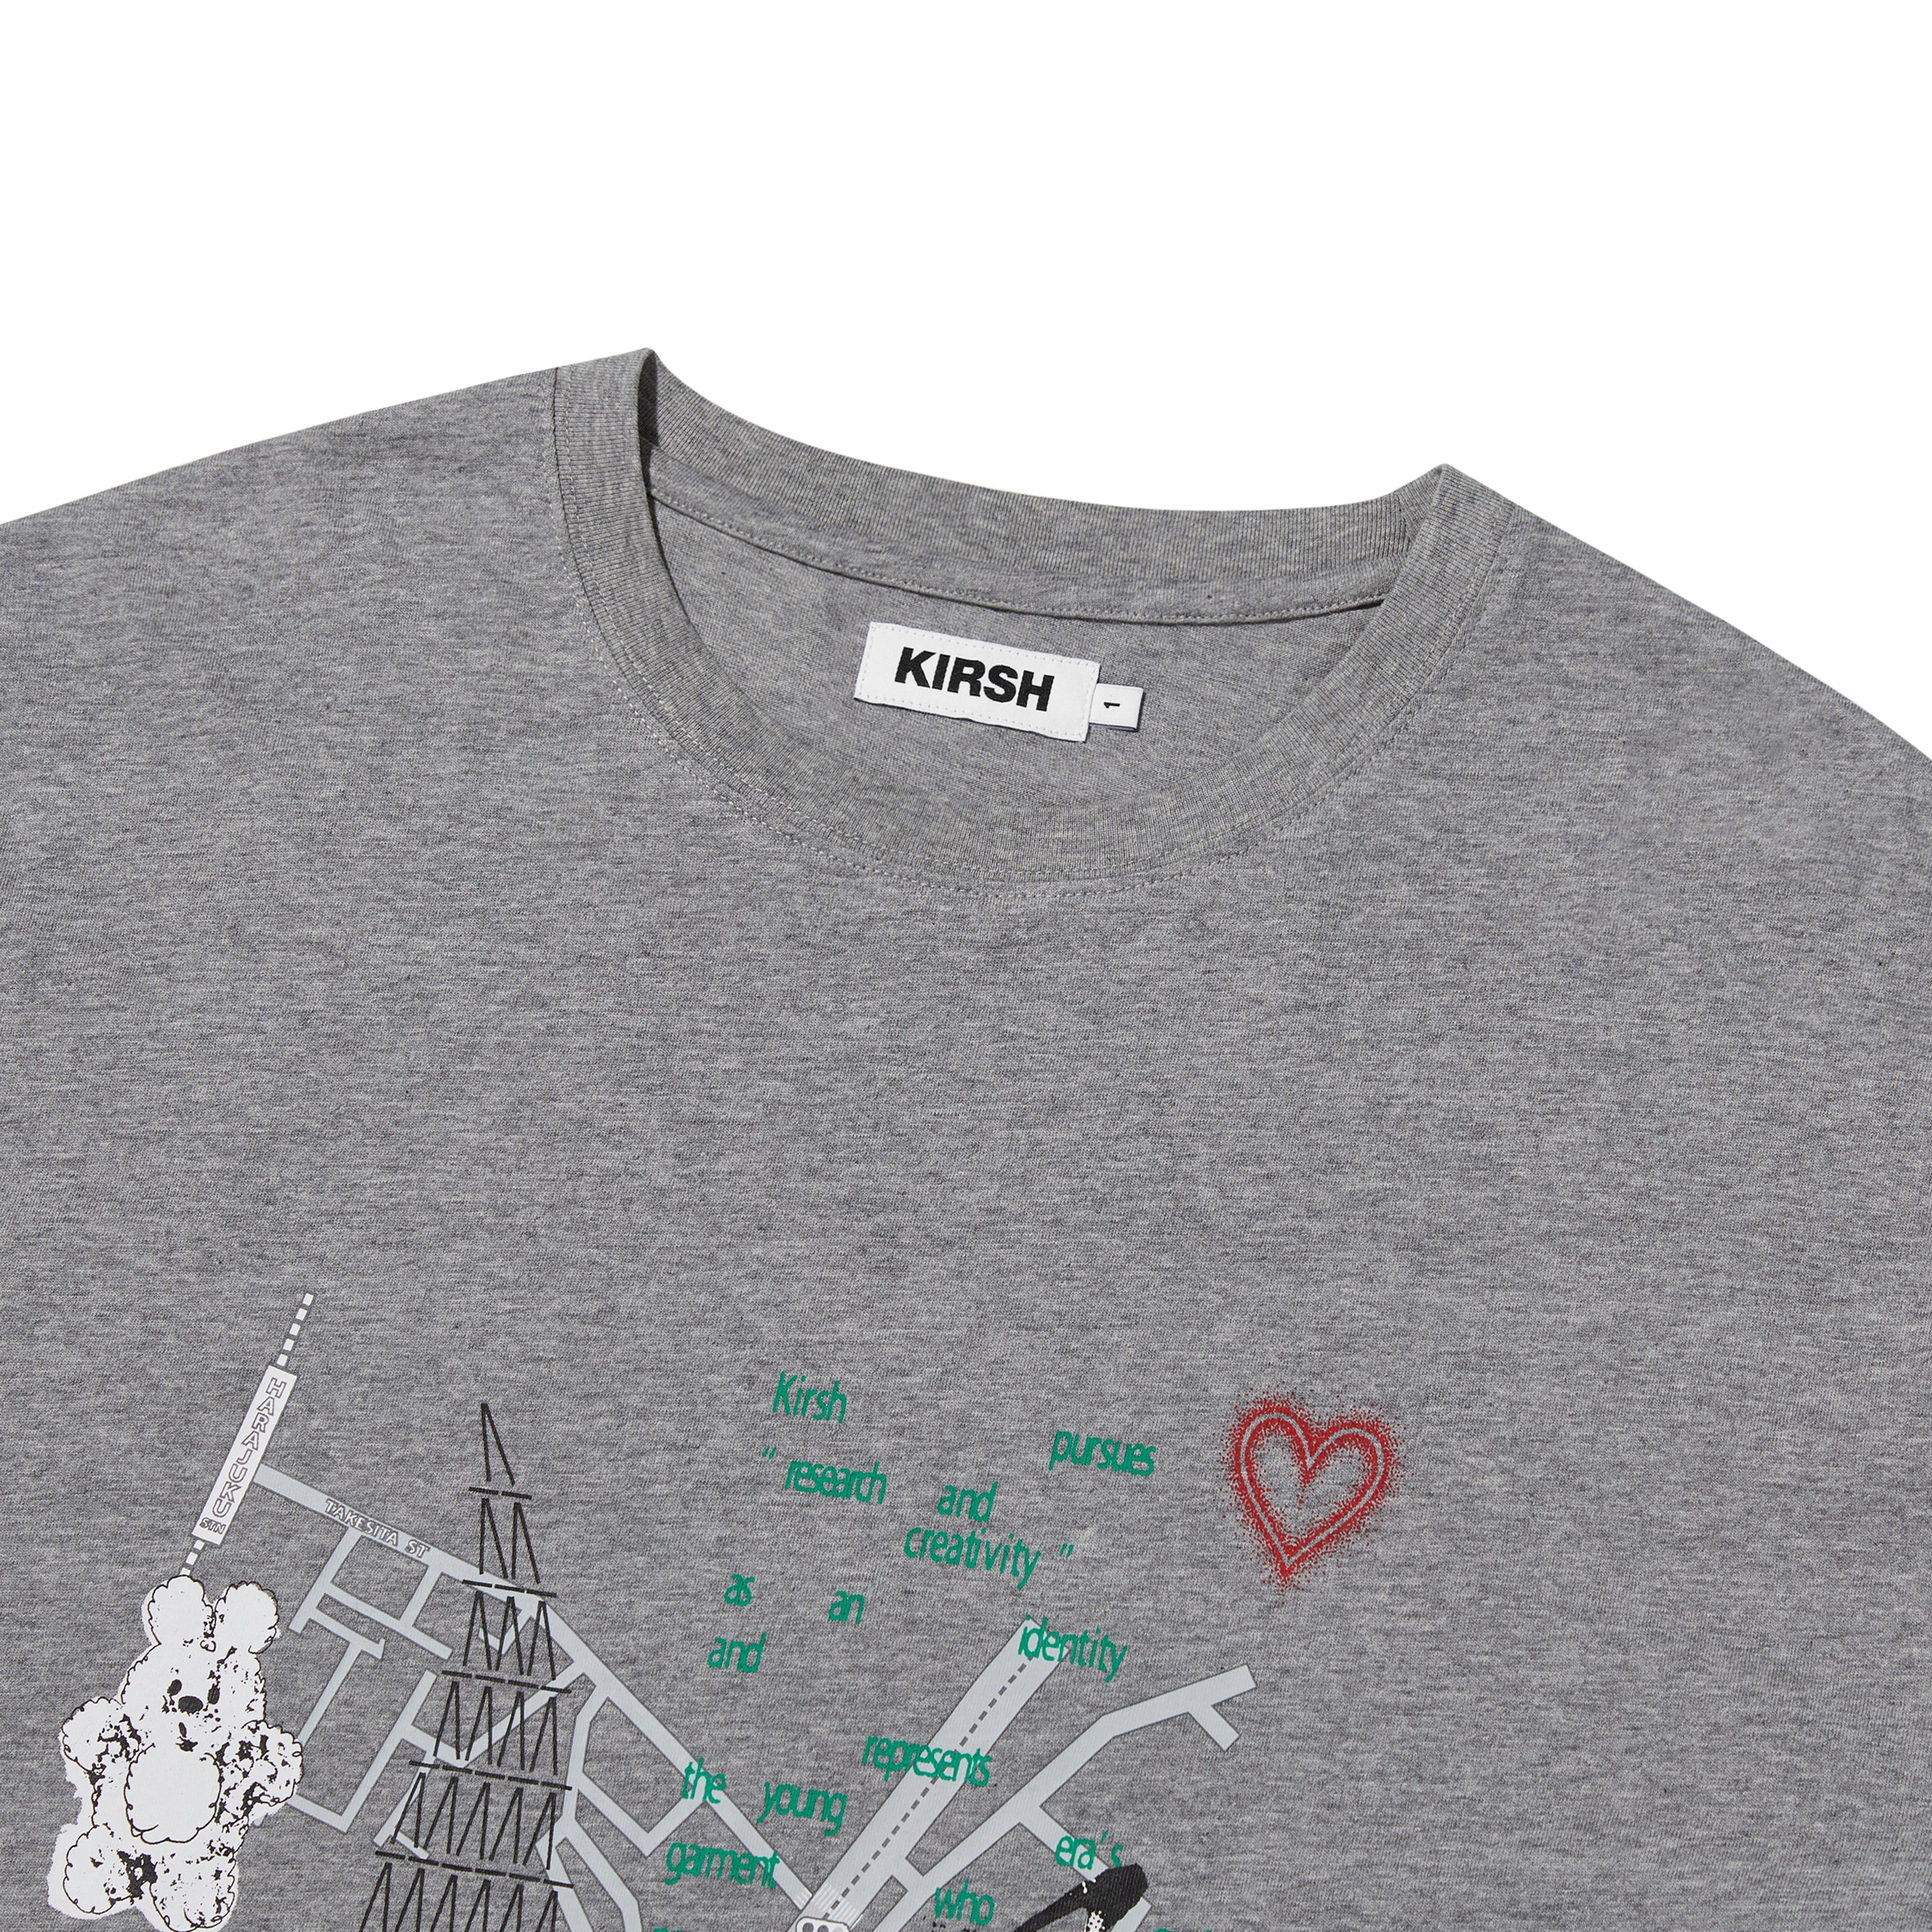 【日本限定】KIRSH X TOKYO シティアートワークTシャツ【メランジグレー】